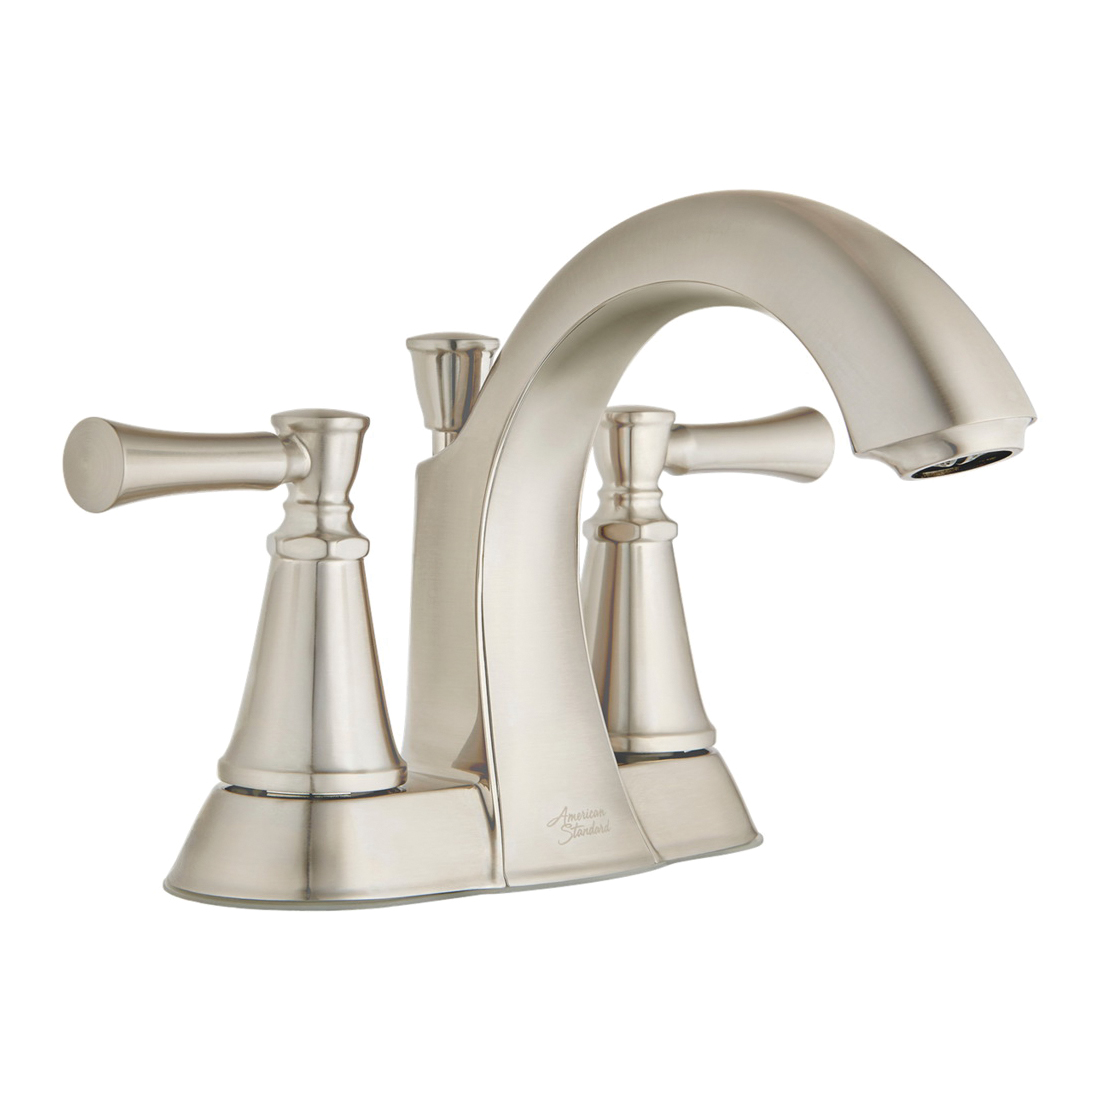 Chancellor Series 7022201.075 Centerset Bathroom Faucet, 1.5 gpm, 2-Faucet Handle, 3-Faucet Hole